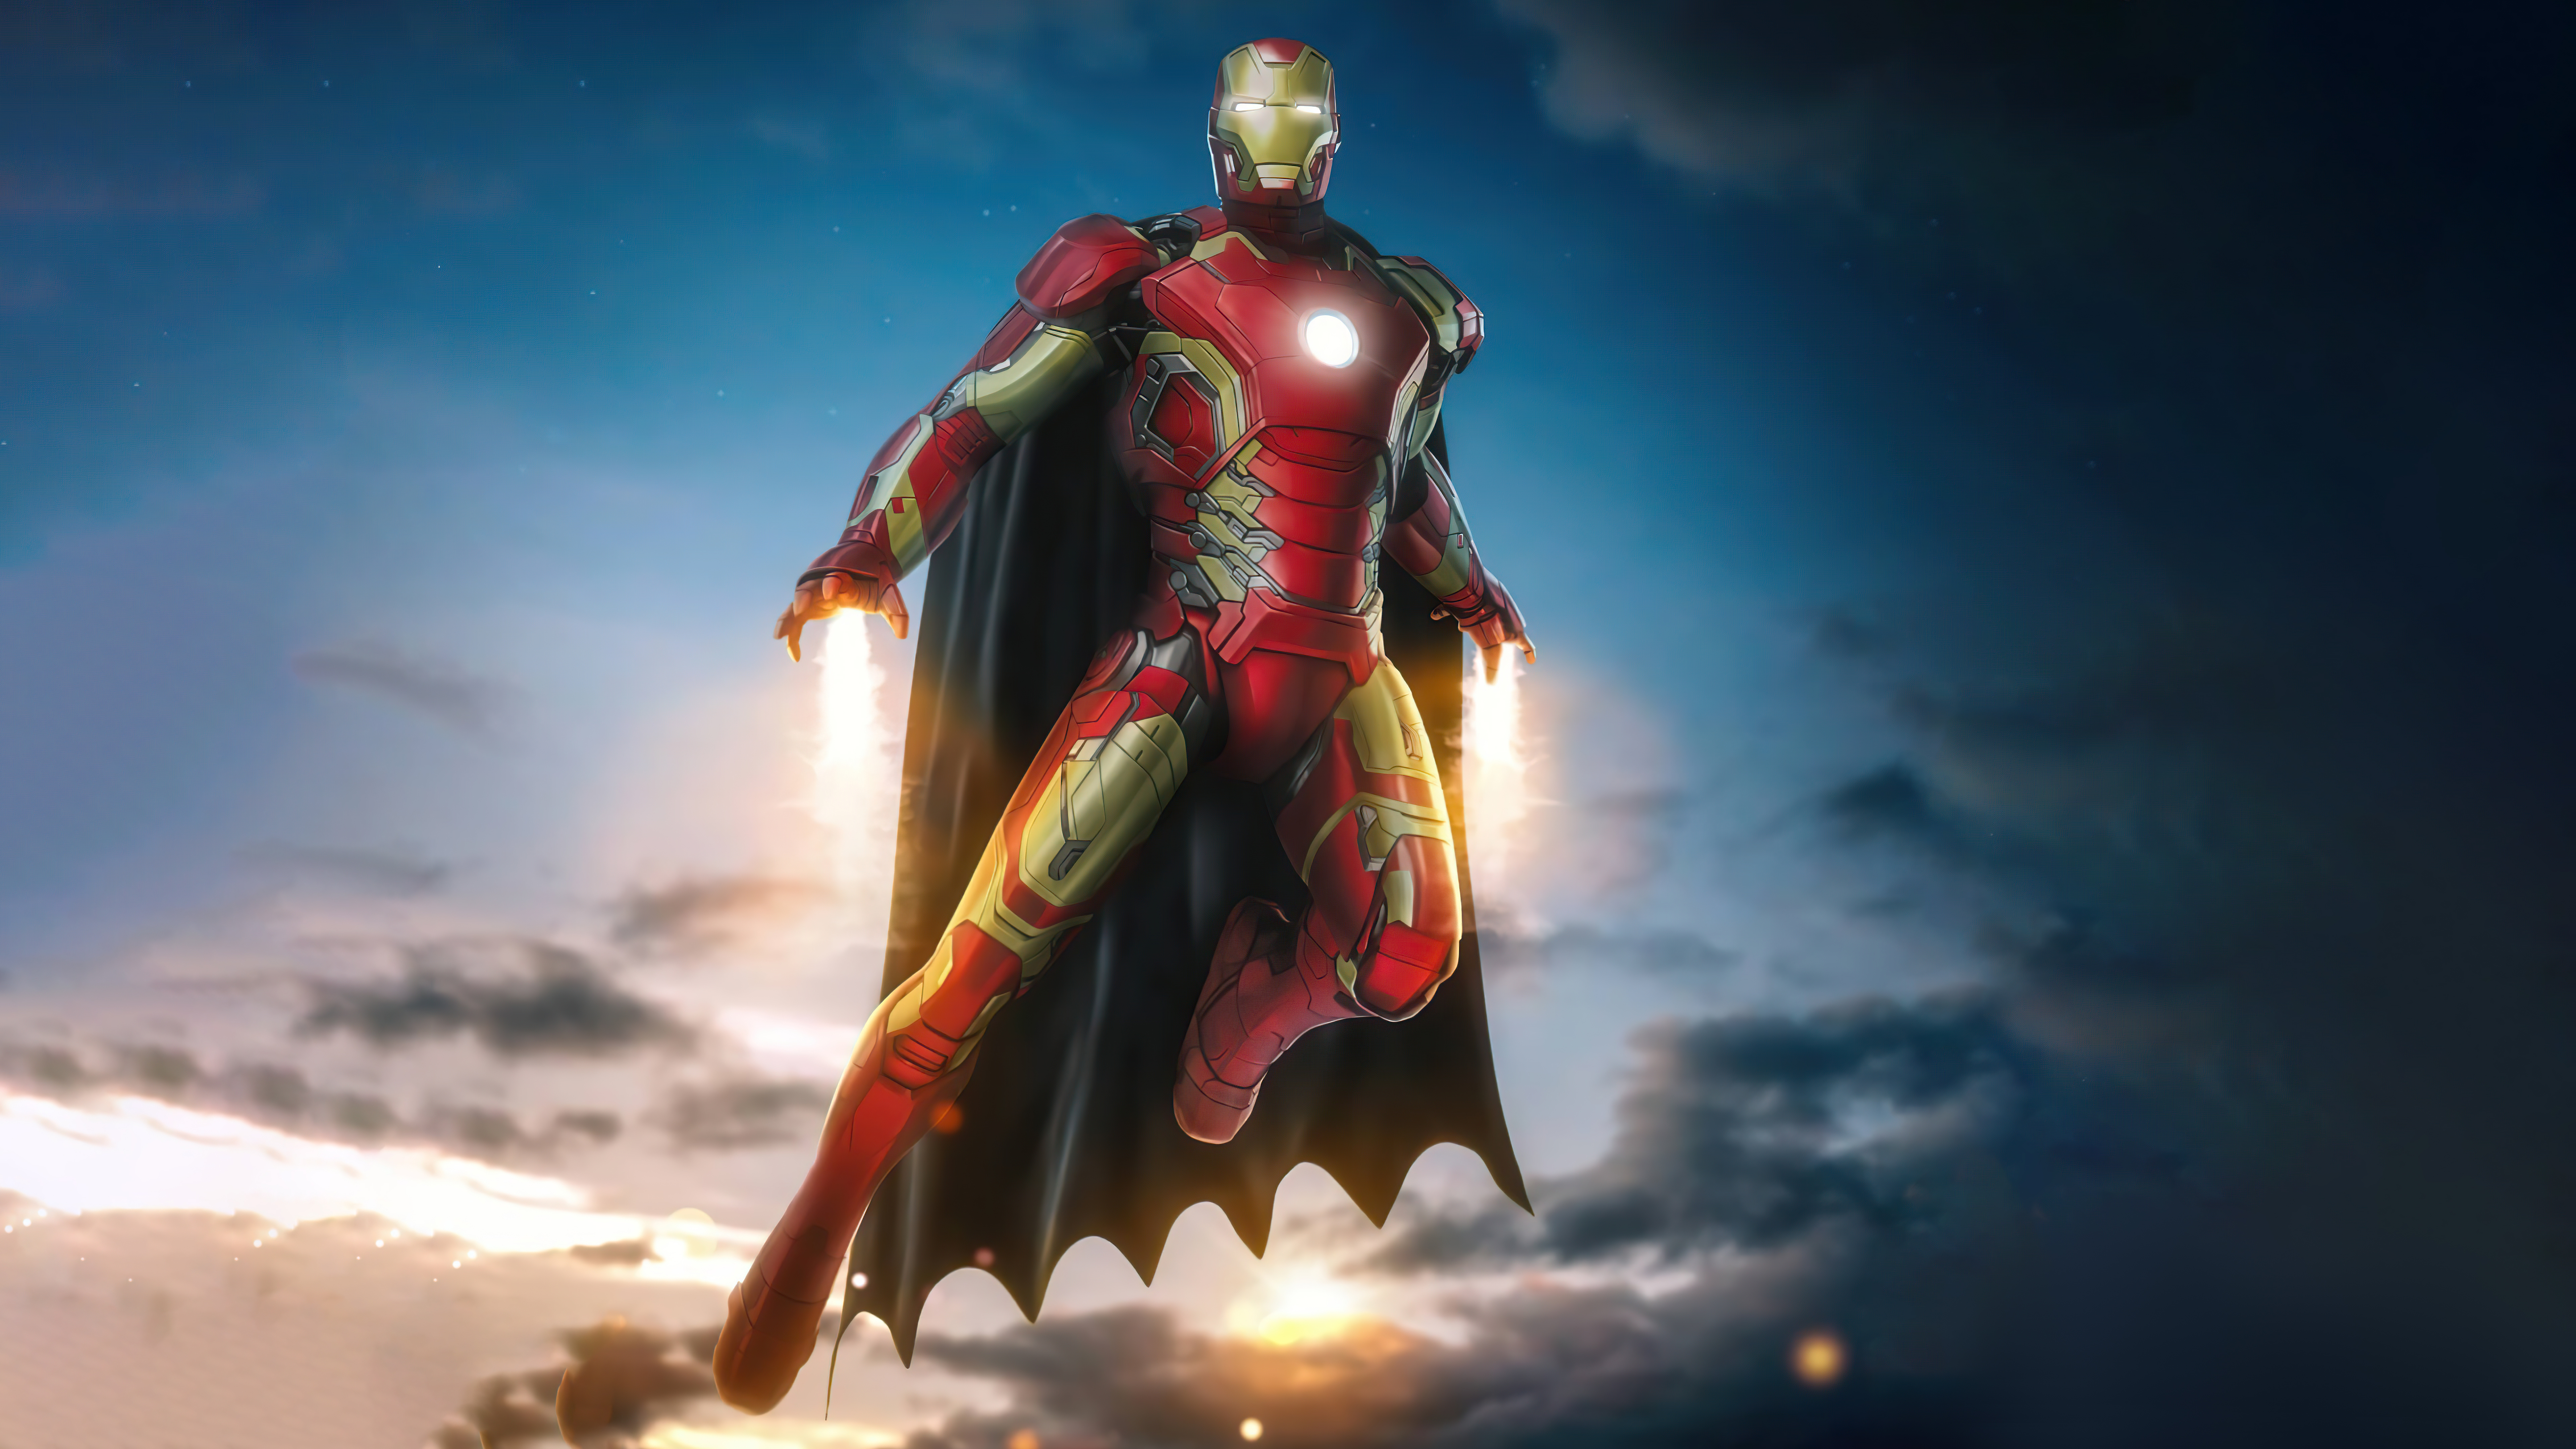 Iron Man: Tony Stark là một trong những siêu anh hùng nổi tiếng nhất của Marvel - anh là người thiết kế ra áo giáp Iron Man, và cũng là người điều khiển nó. Hãy xem hình ảnh liên quan để tìm hiểu thêm về những trang bị đặc biệt của Iron Man nhé!